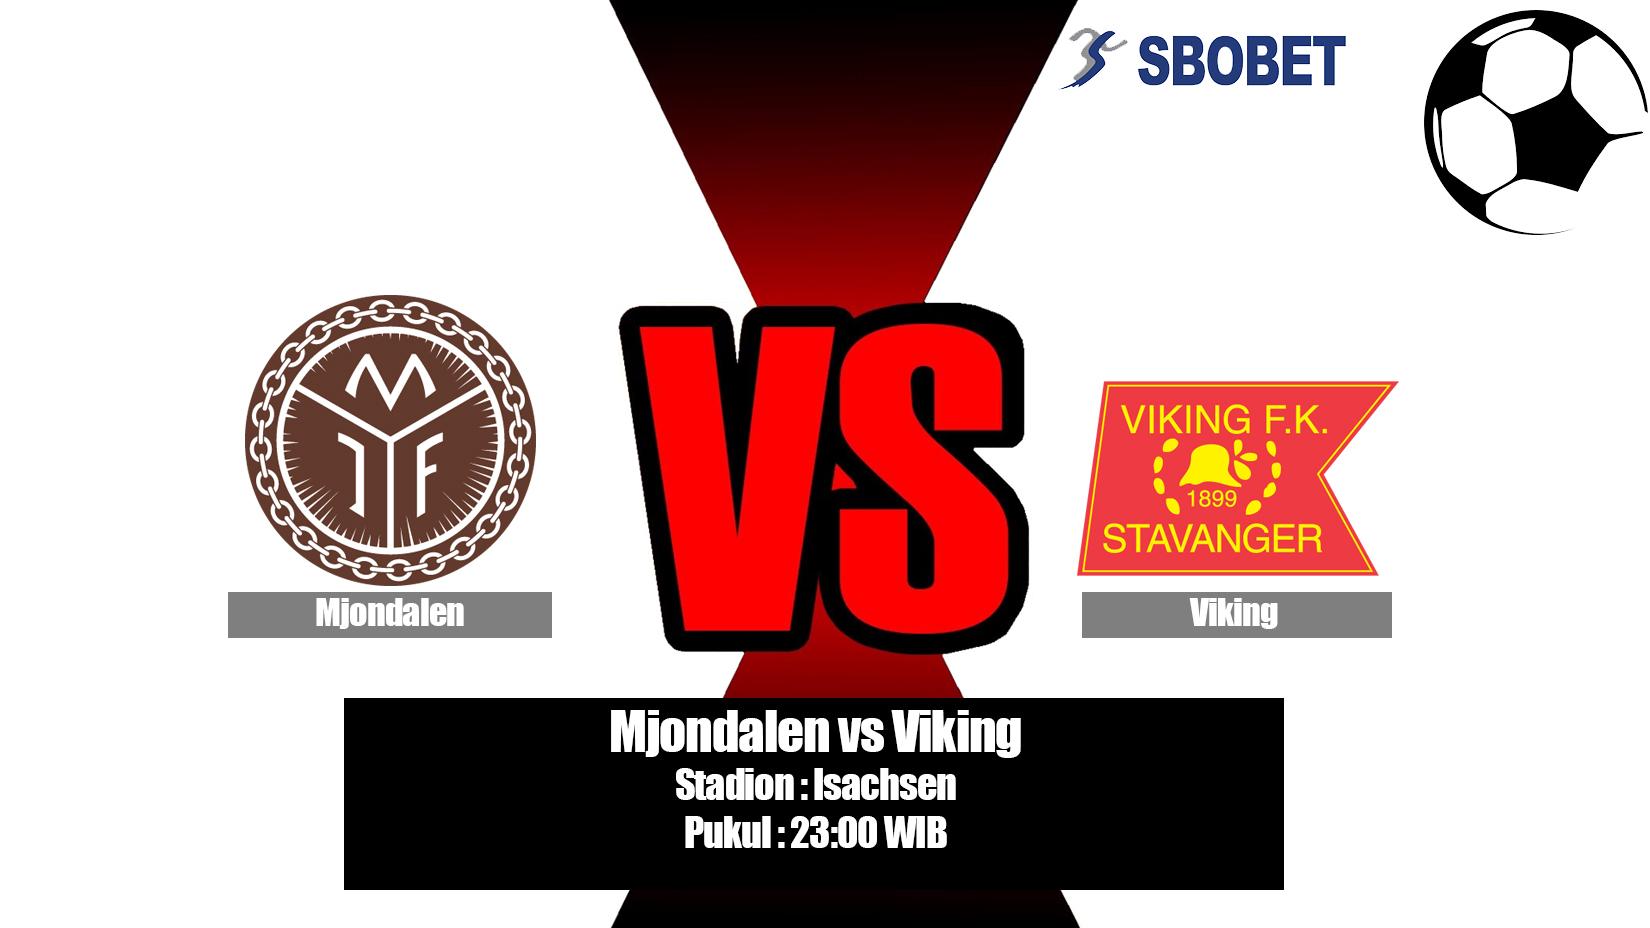 Prediksi Bola Mjondalen vs Viking 30 Juni 2019